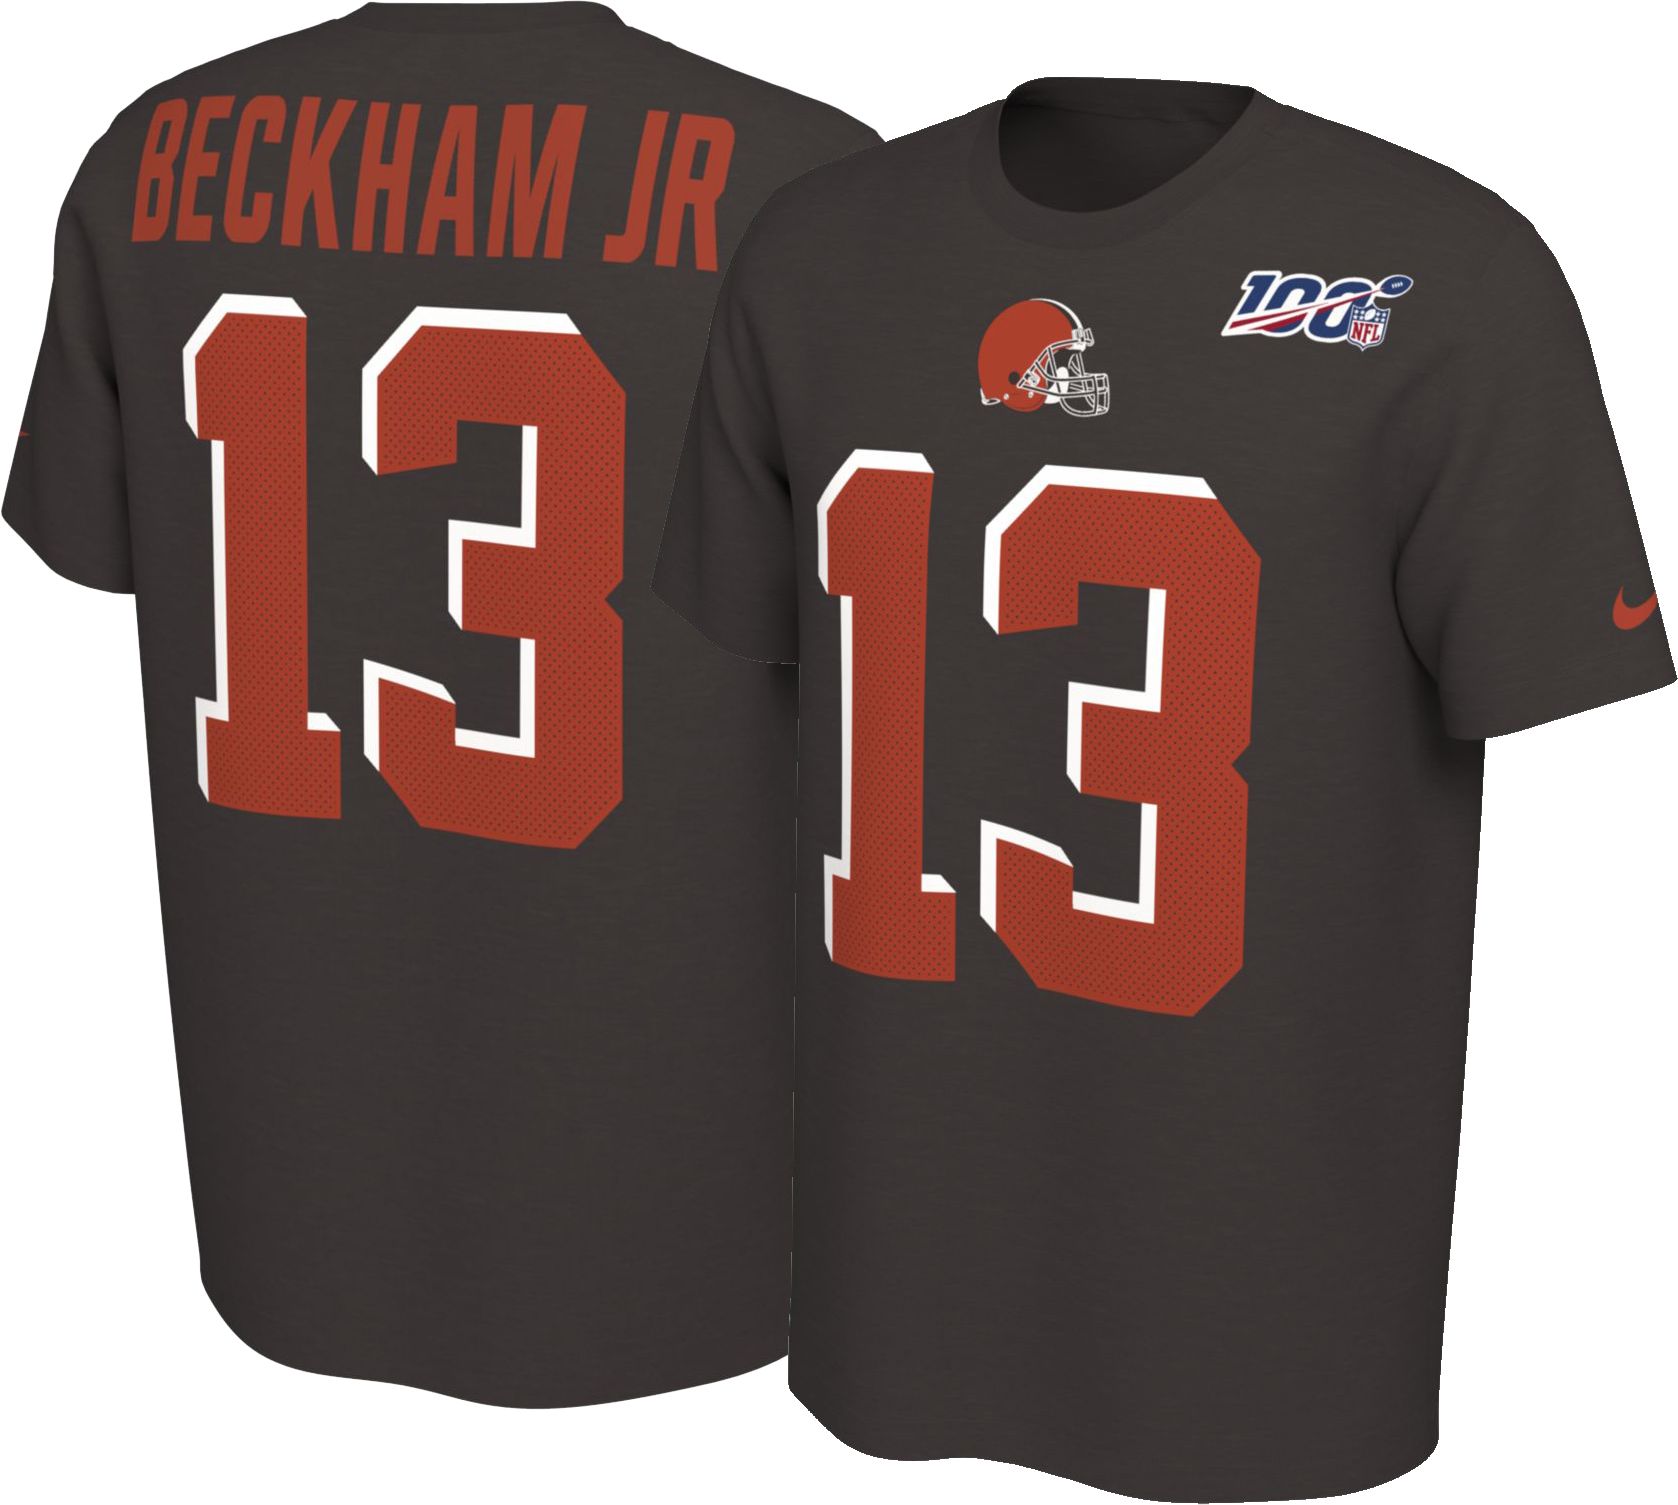 beckham jr shirt